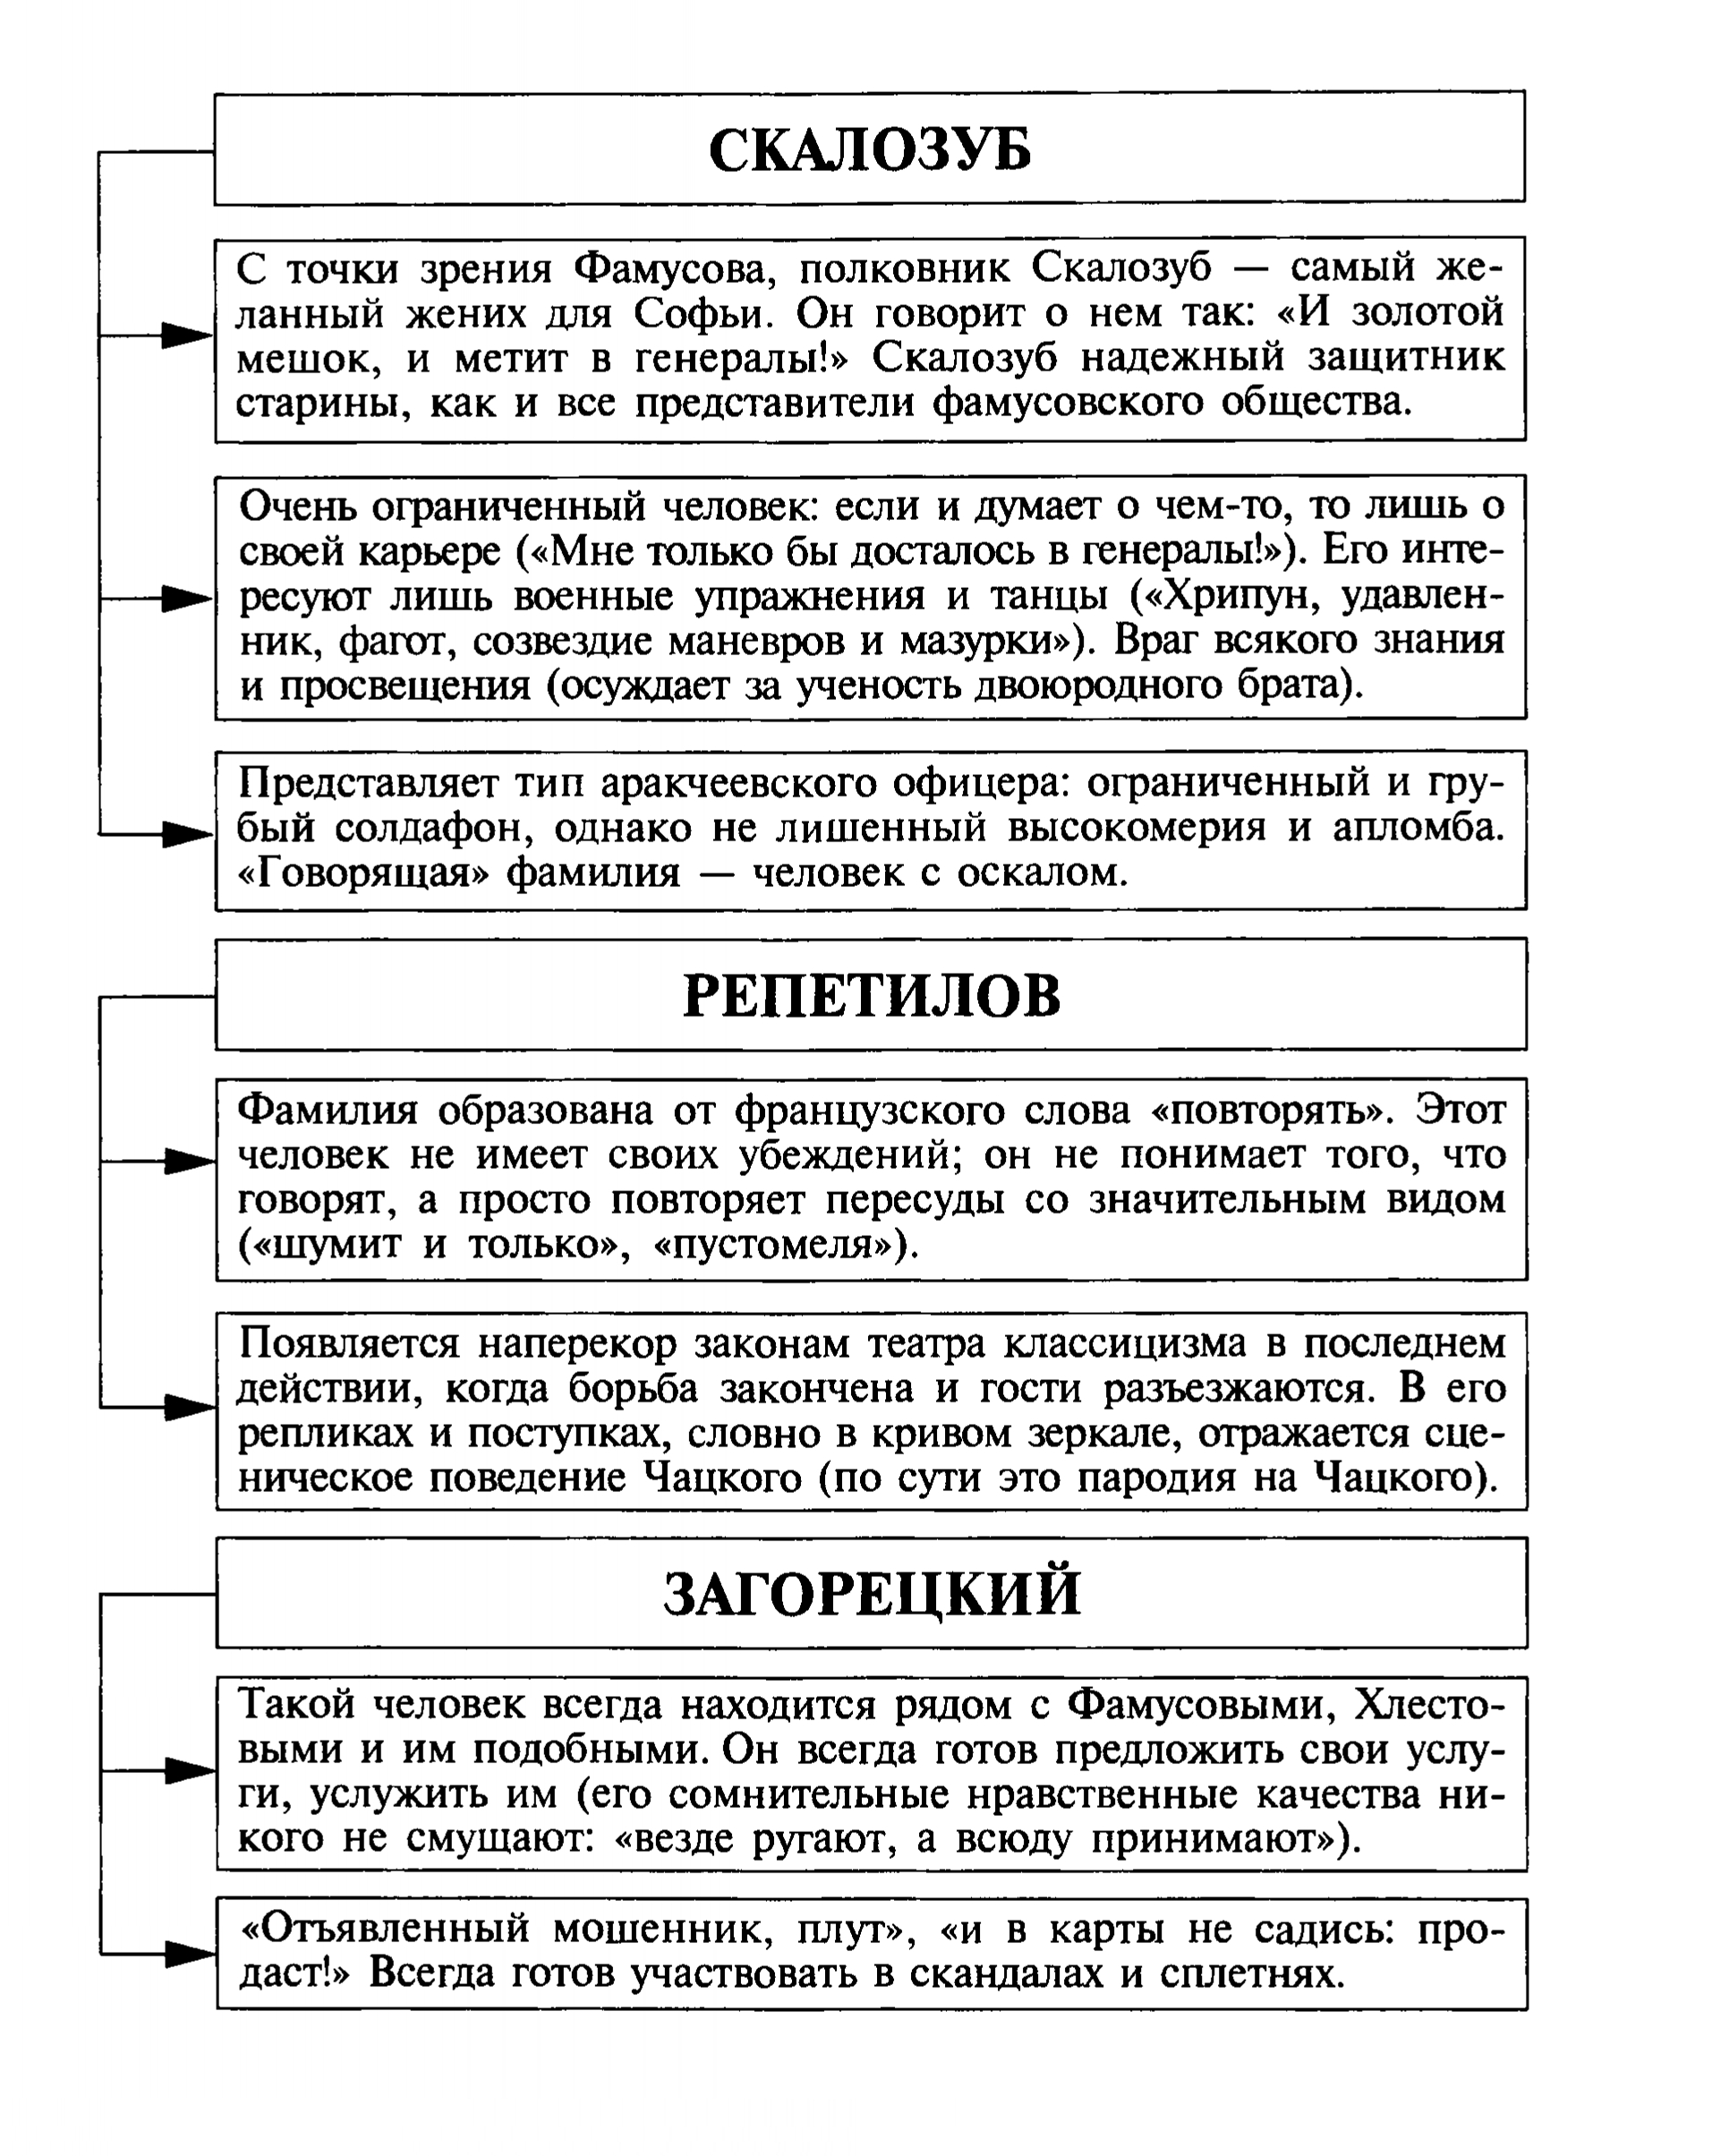 Скалозуб - характеристика персонажа (таблица)